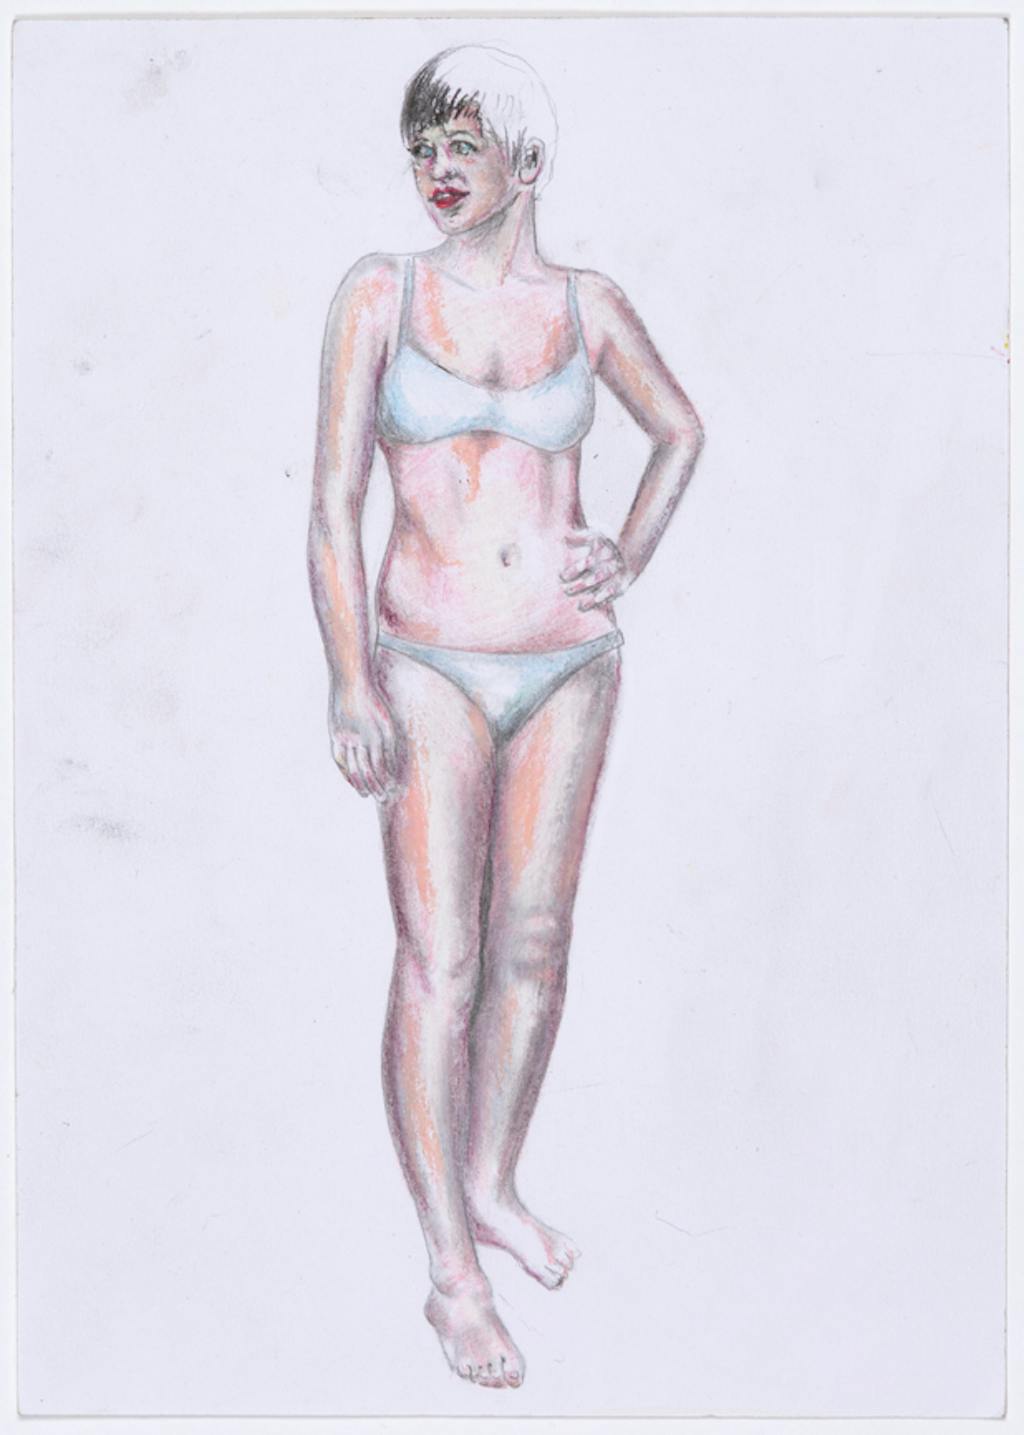 Martial Raysse
Émilie, pour Ici plage, 2010
Graphite, colored pencil, pastel and collage on paper
29.5 x 21 cm - © Mennour